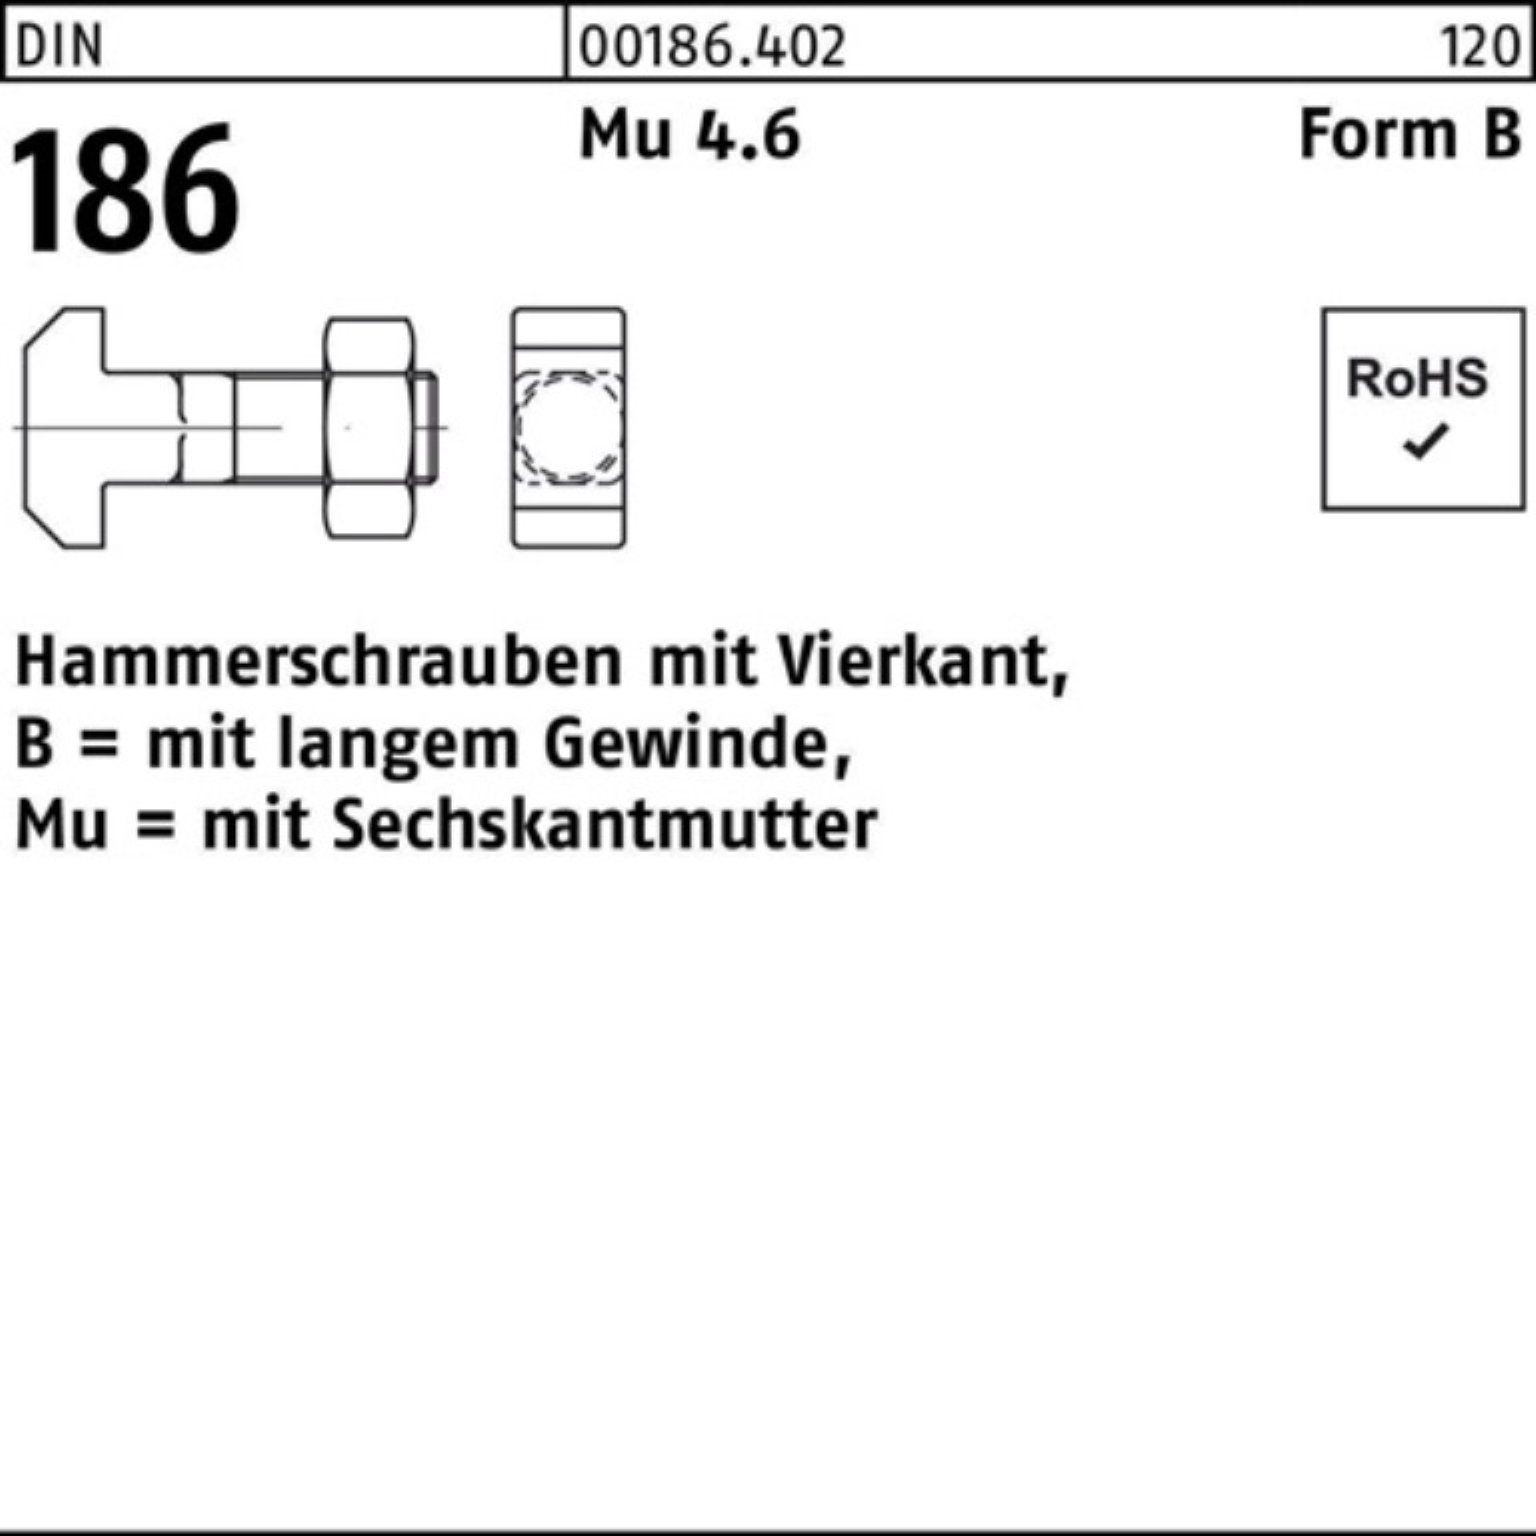 Reyher Schraube 100er Pack Hammerschraube 6-ktmutter 186 110 FormB BM 24x Vierkant DIN